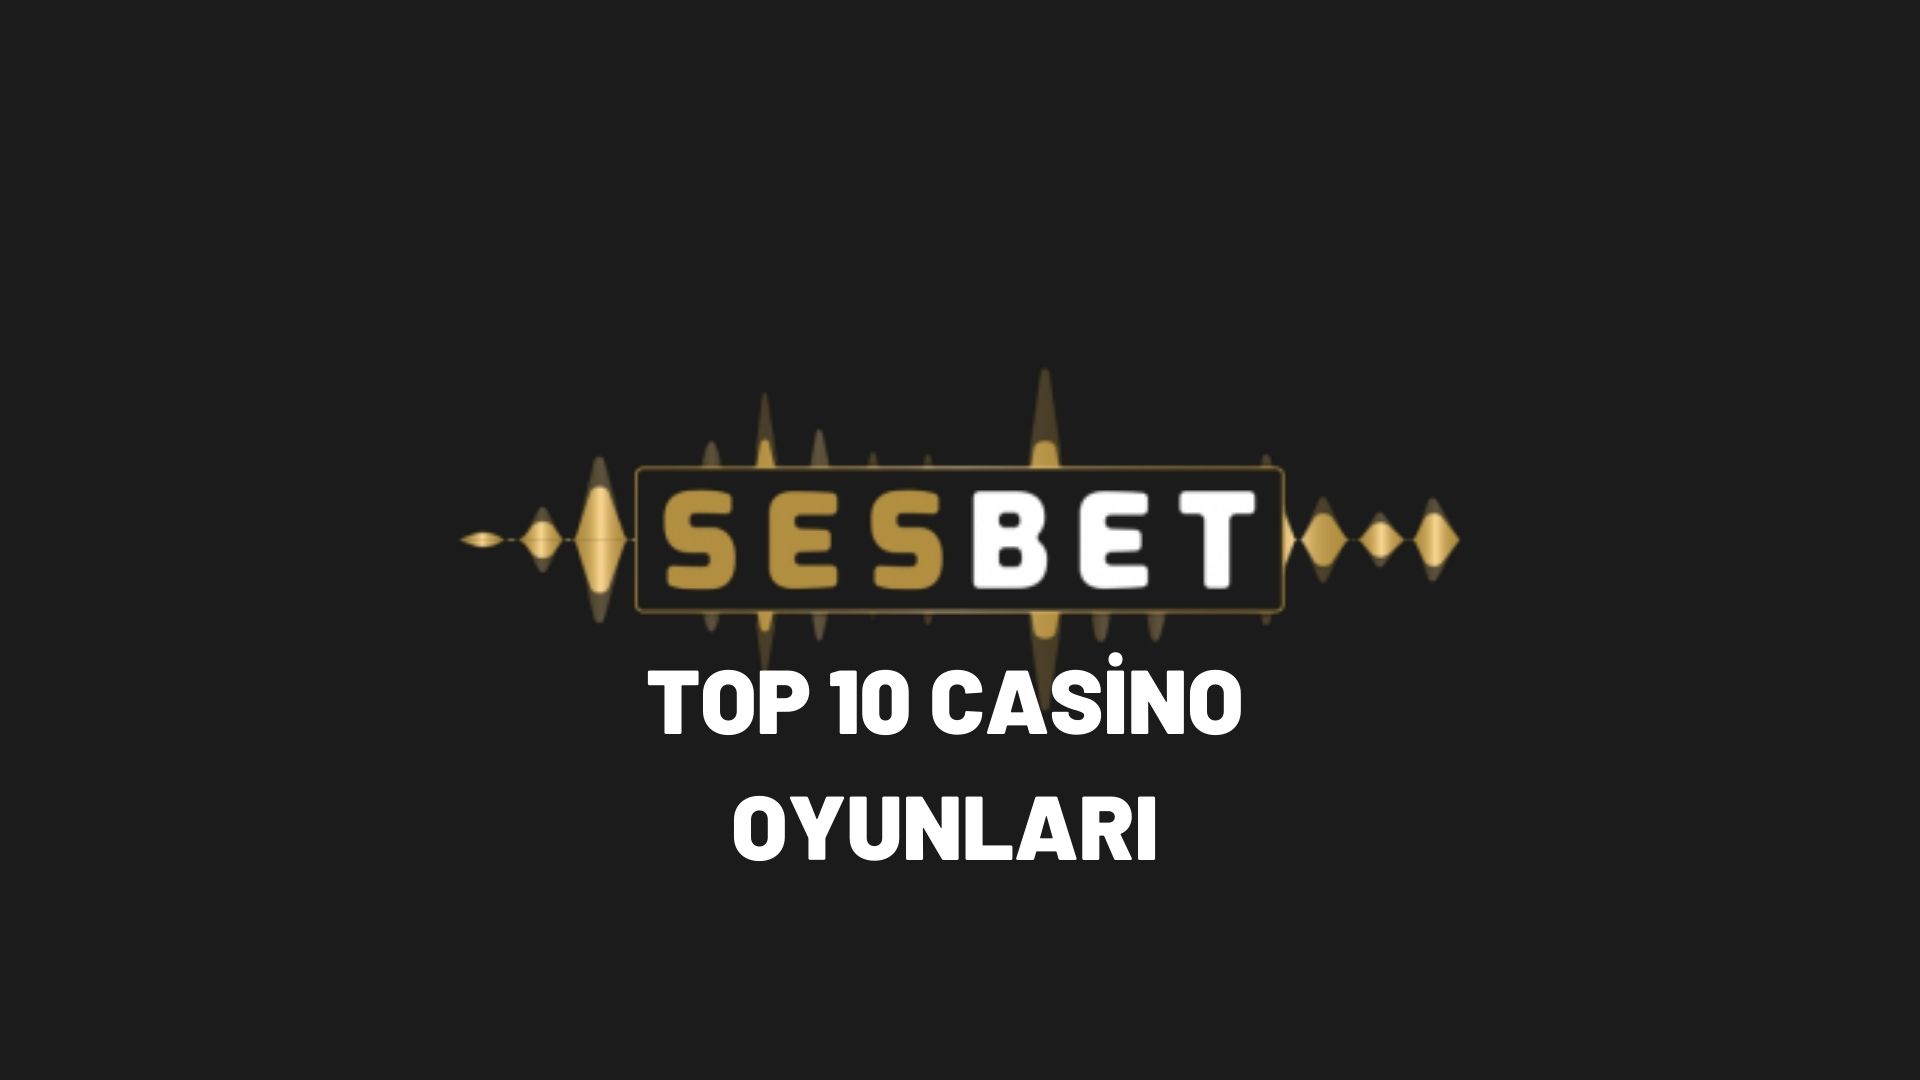 sesbet-yop-10-casino-oyunlari